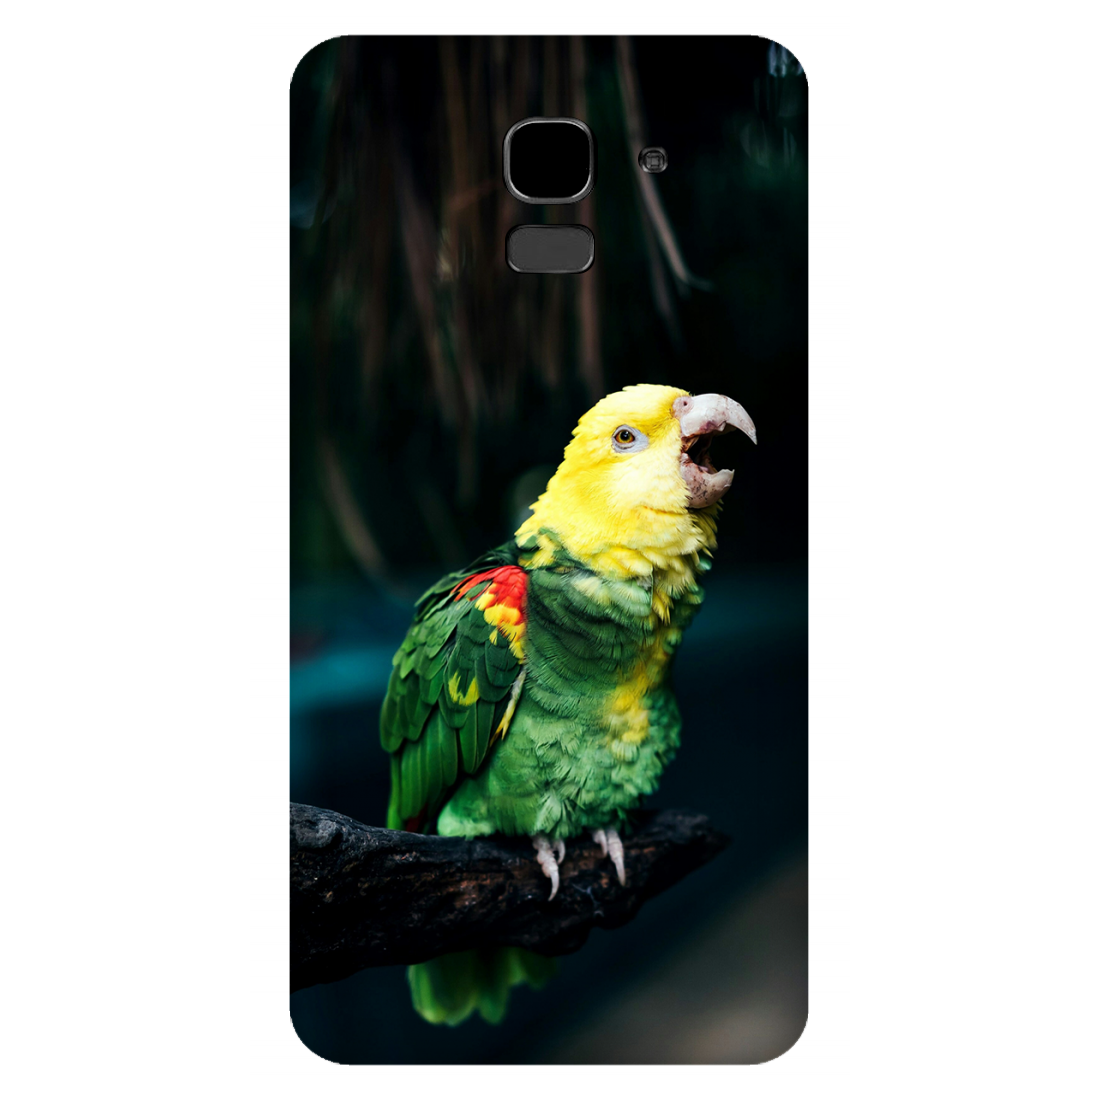 Vocalizing Vibrance: A Parrot Portrait Case Samsung Galaxy J6